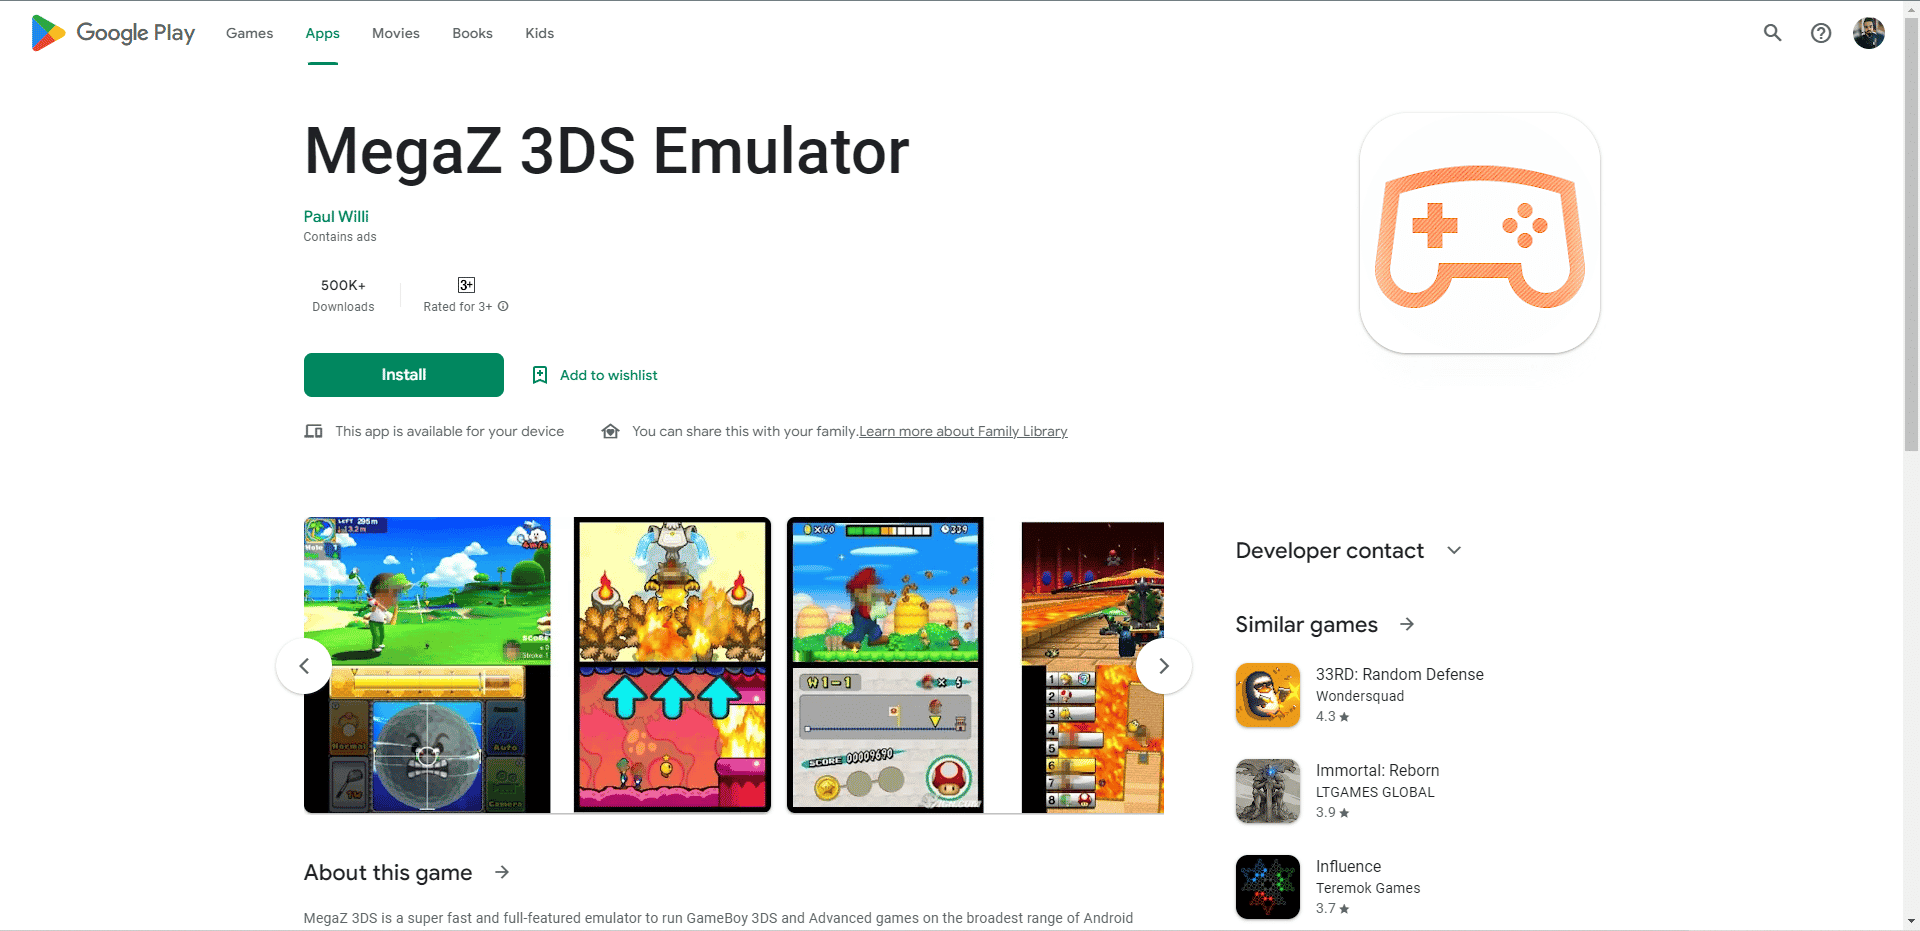 MegaZ 3DS Emulator leikverslun vefsíða. Besti 3D keppinauturinn niðurhal fyrir Android APK